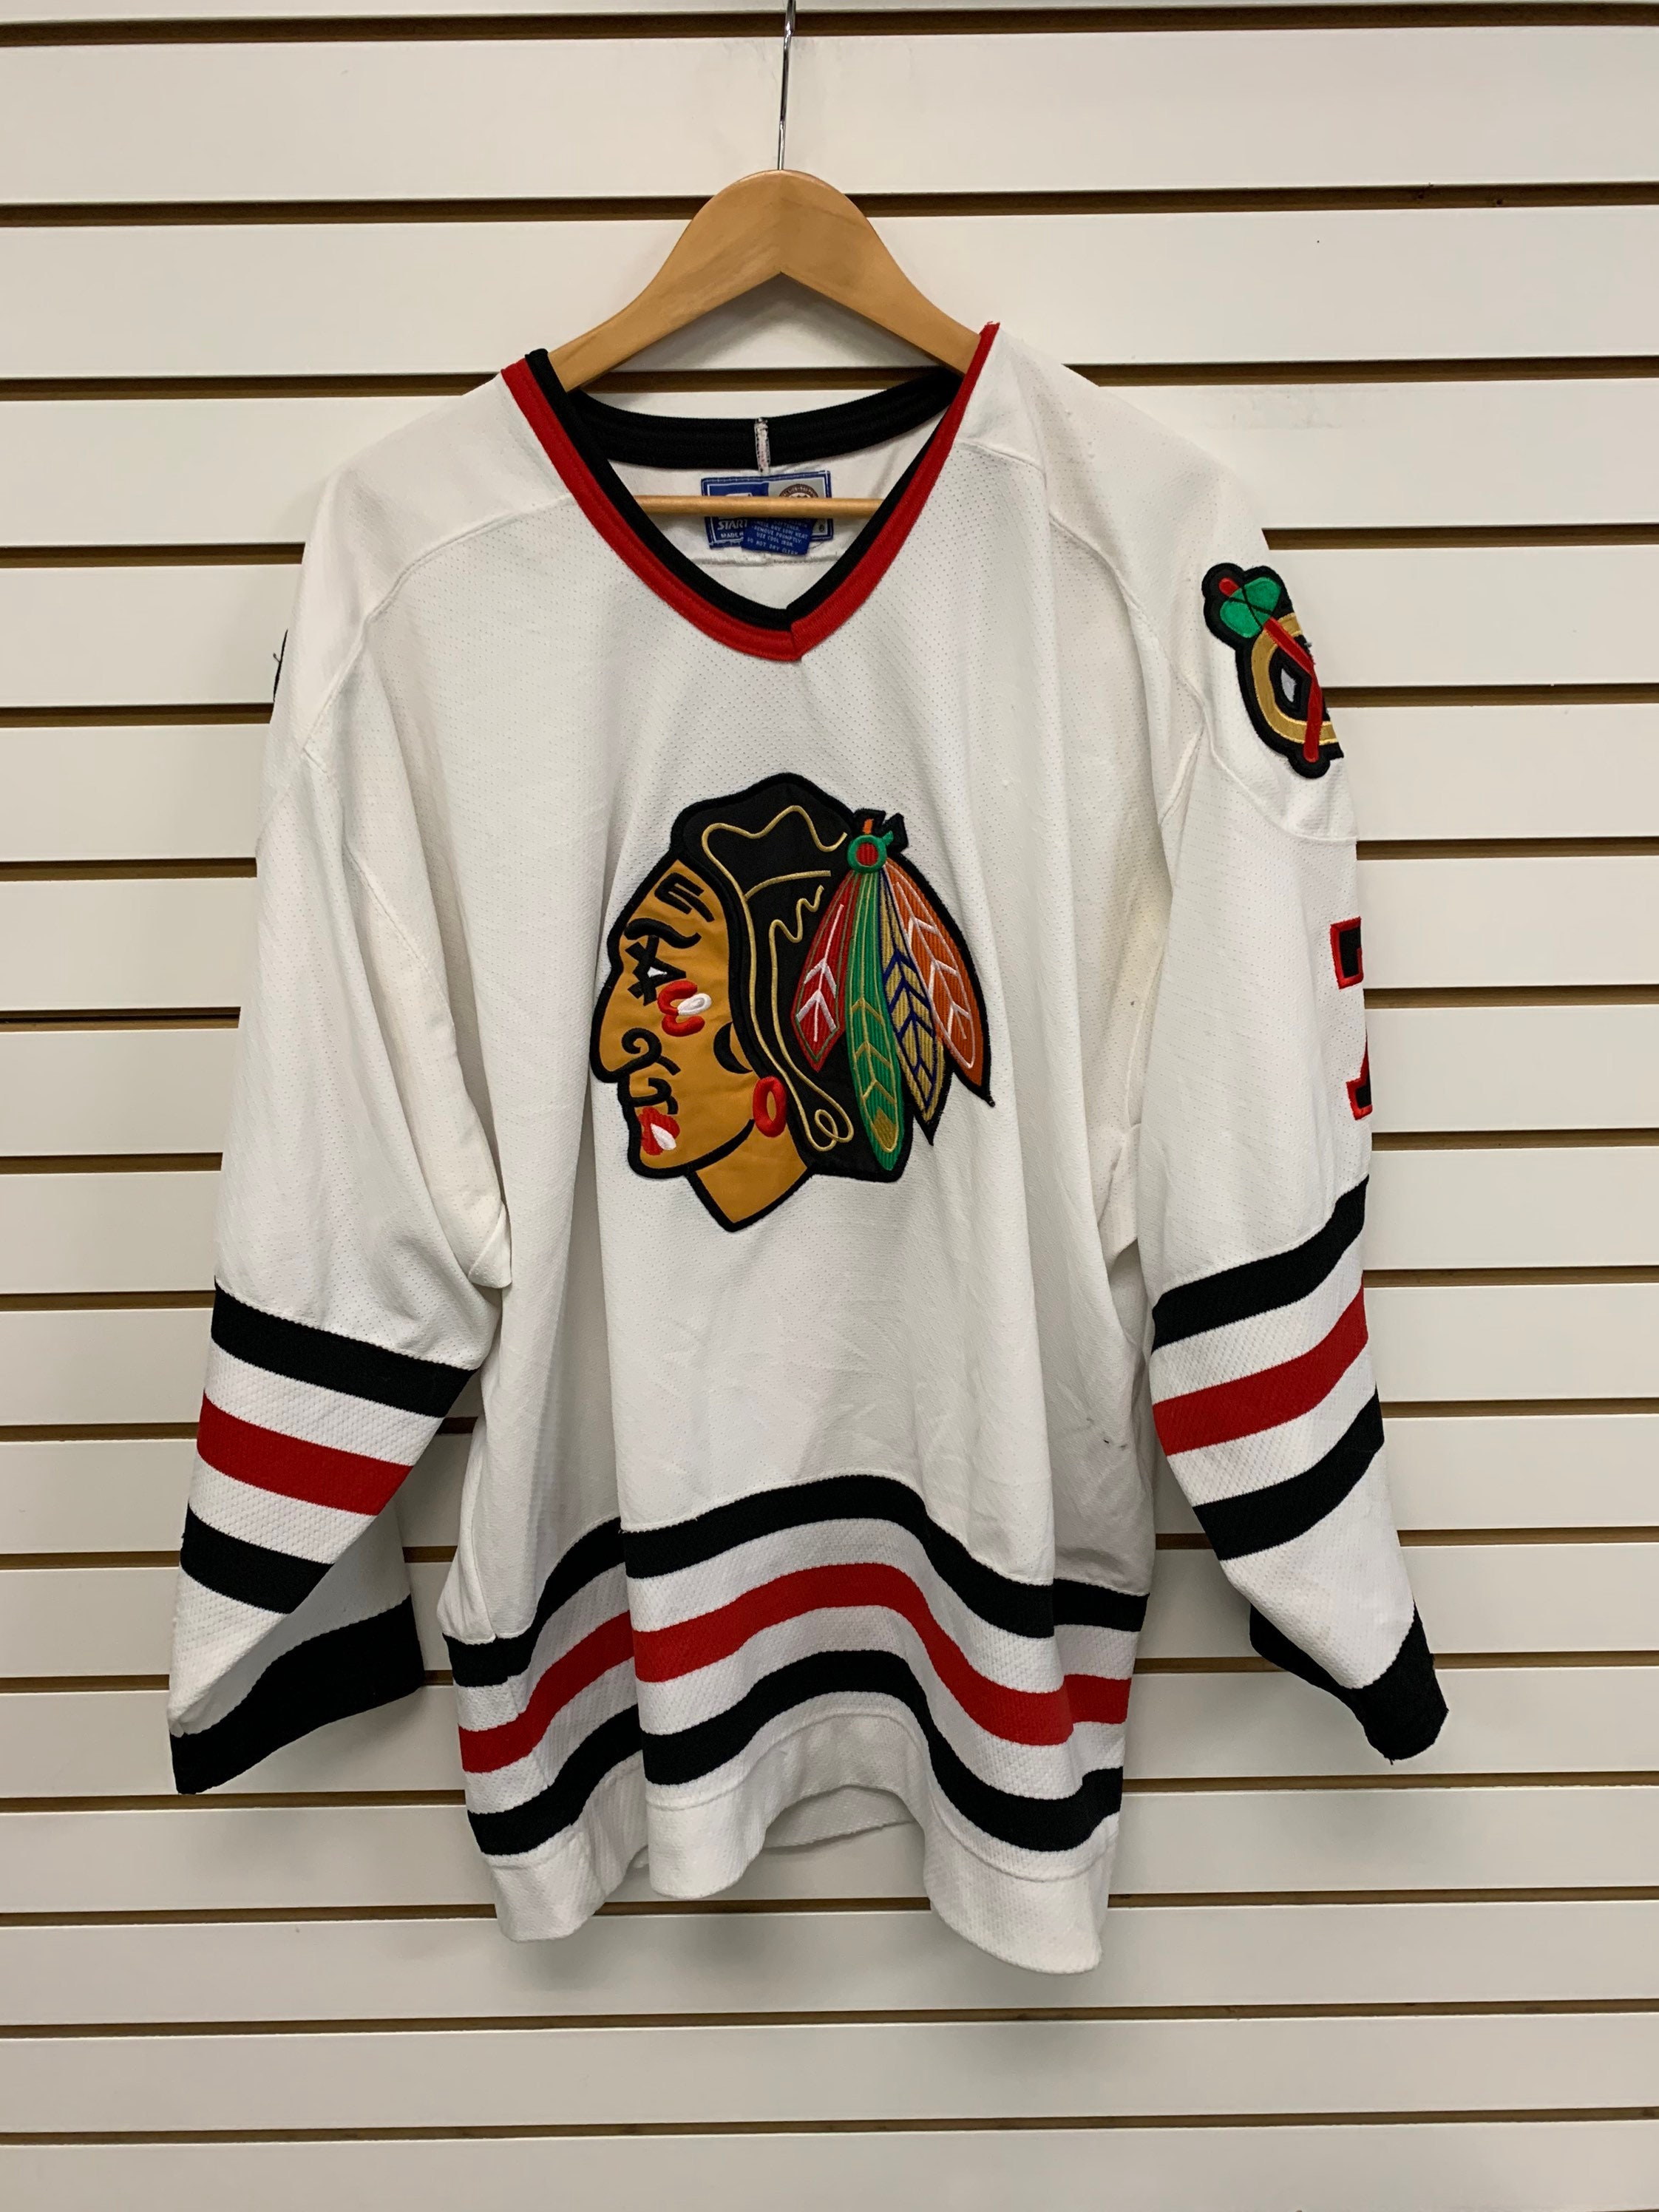 Lostboysvintage Vintage 1990s Chicago Blackhawks CCM NHL Hockey Jersey / Sportswear / NHL Fan Gear / Athleisure / Throwback / Retro / Streetwear / Chicago